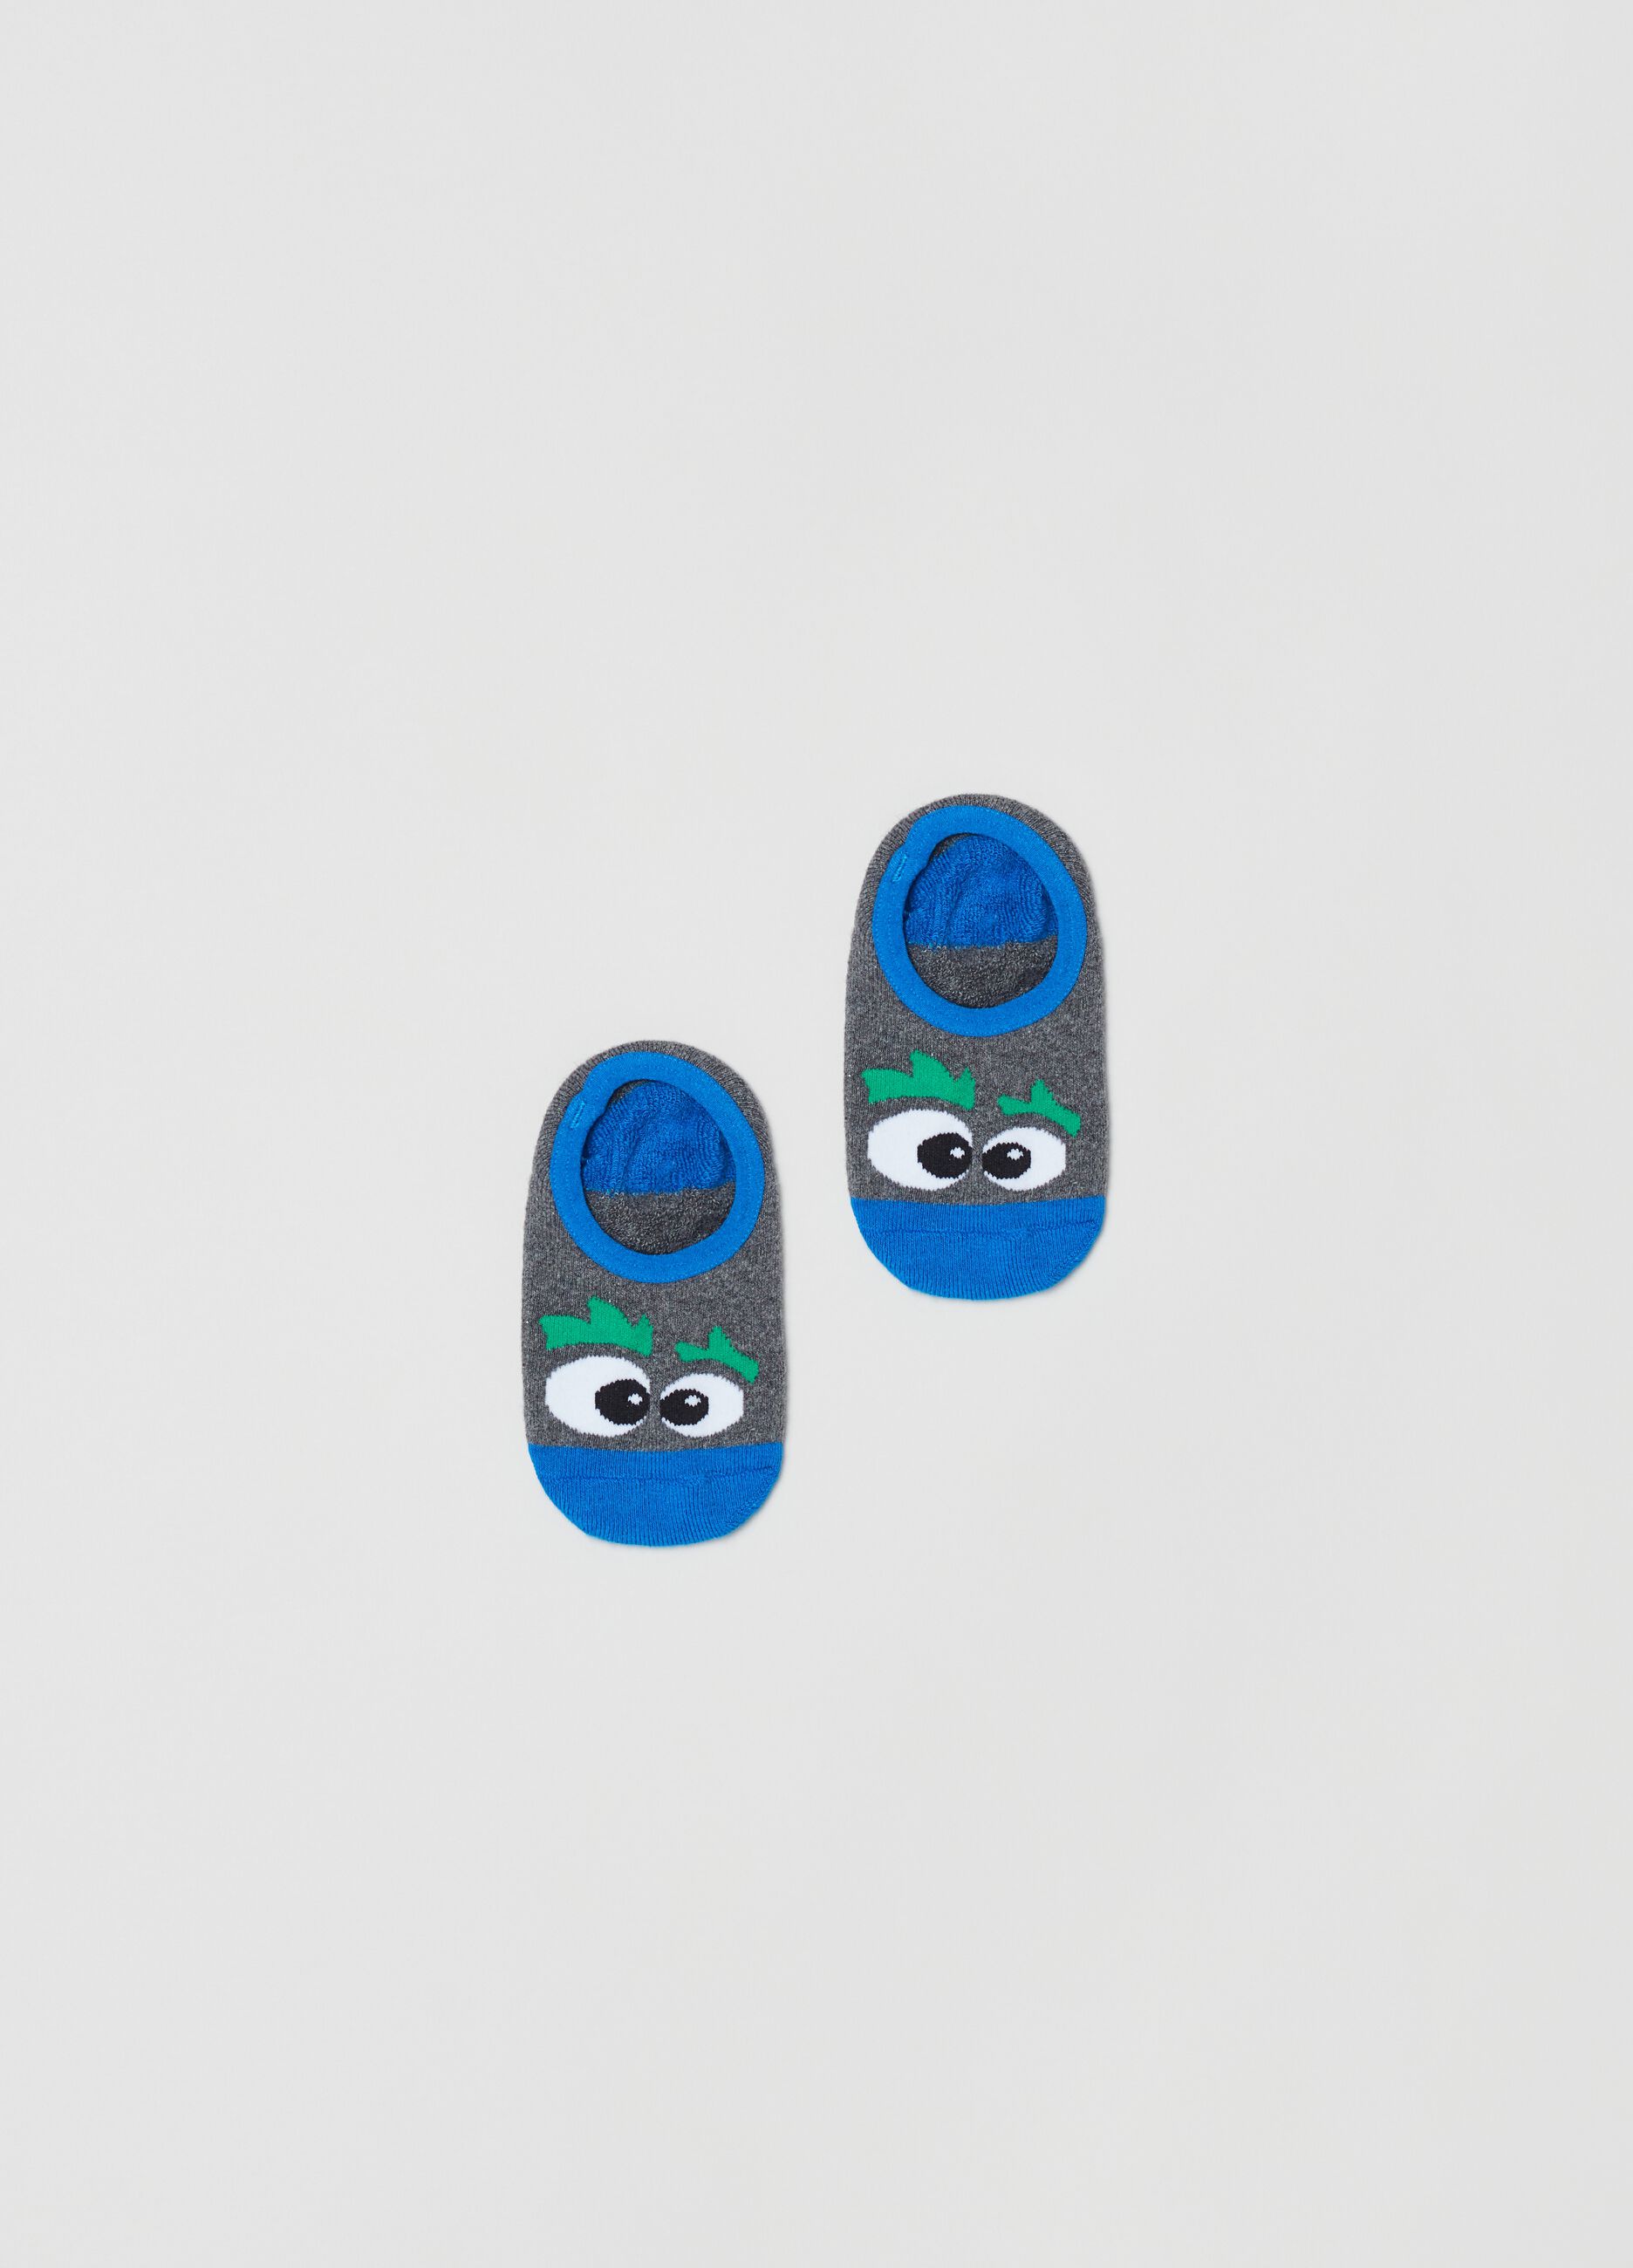 Slipper socks with eye design